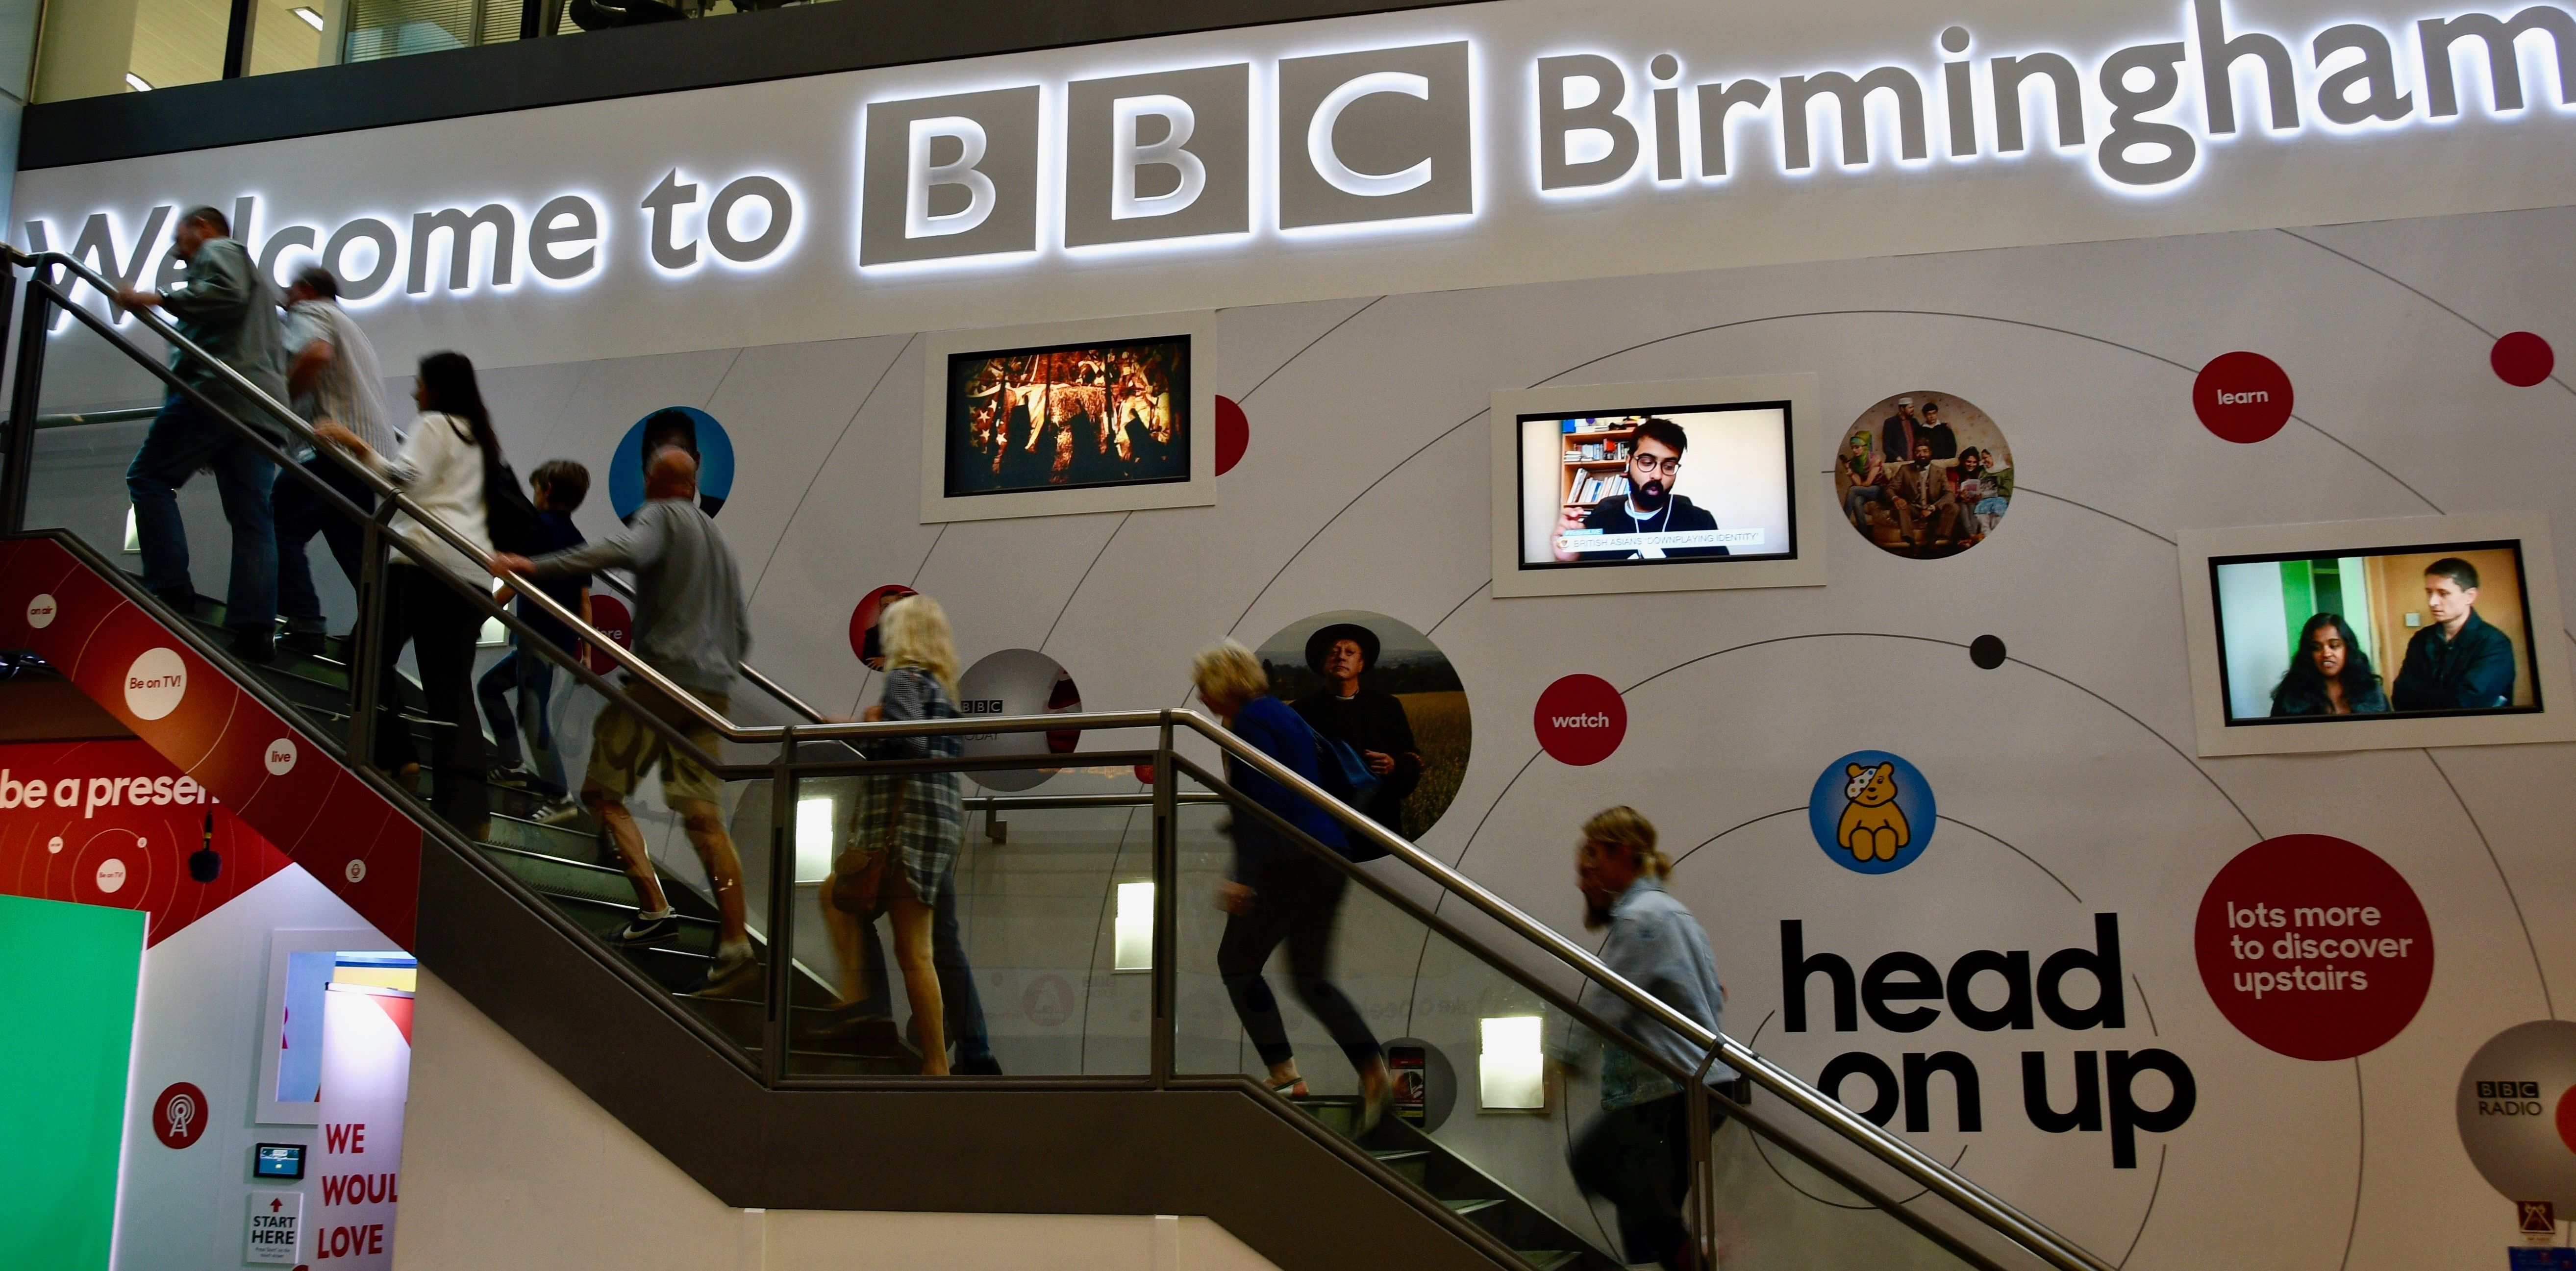 2021-03/bbc-birmingham